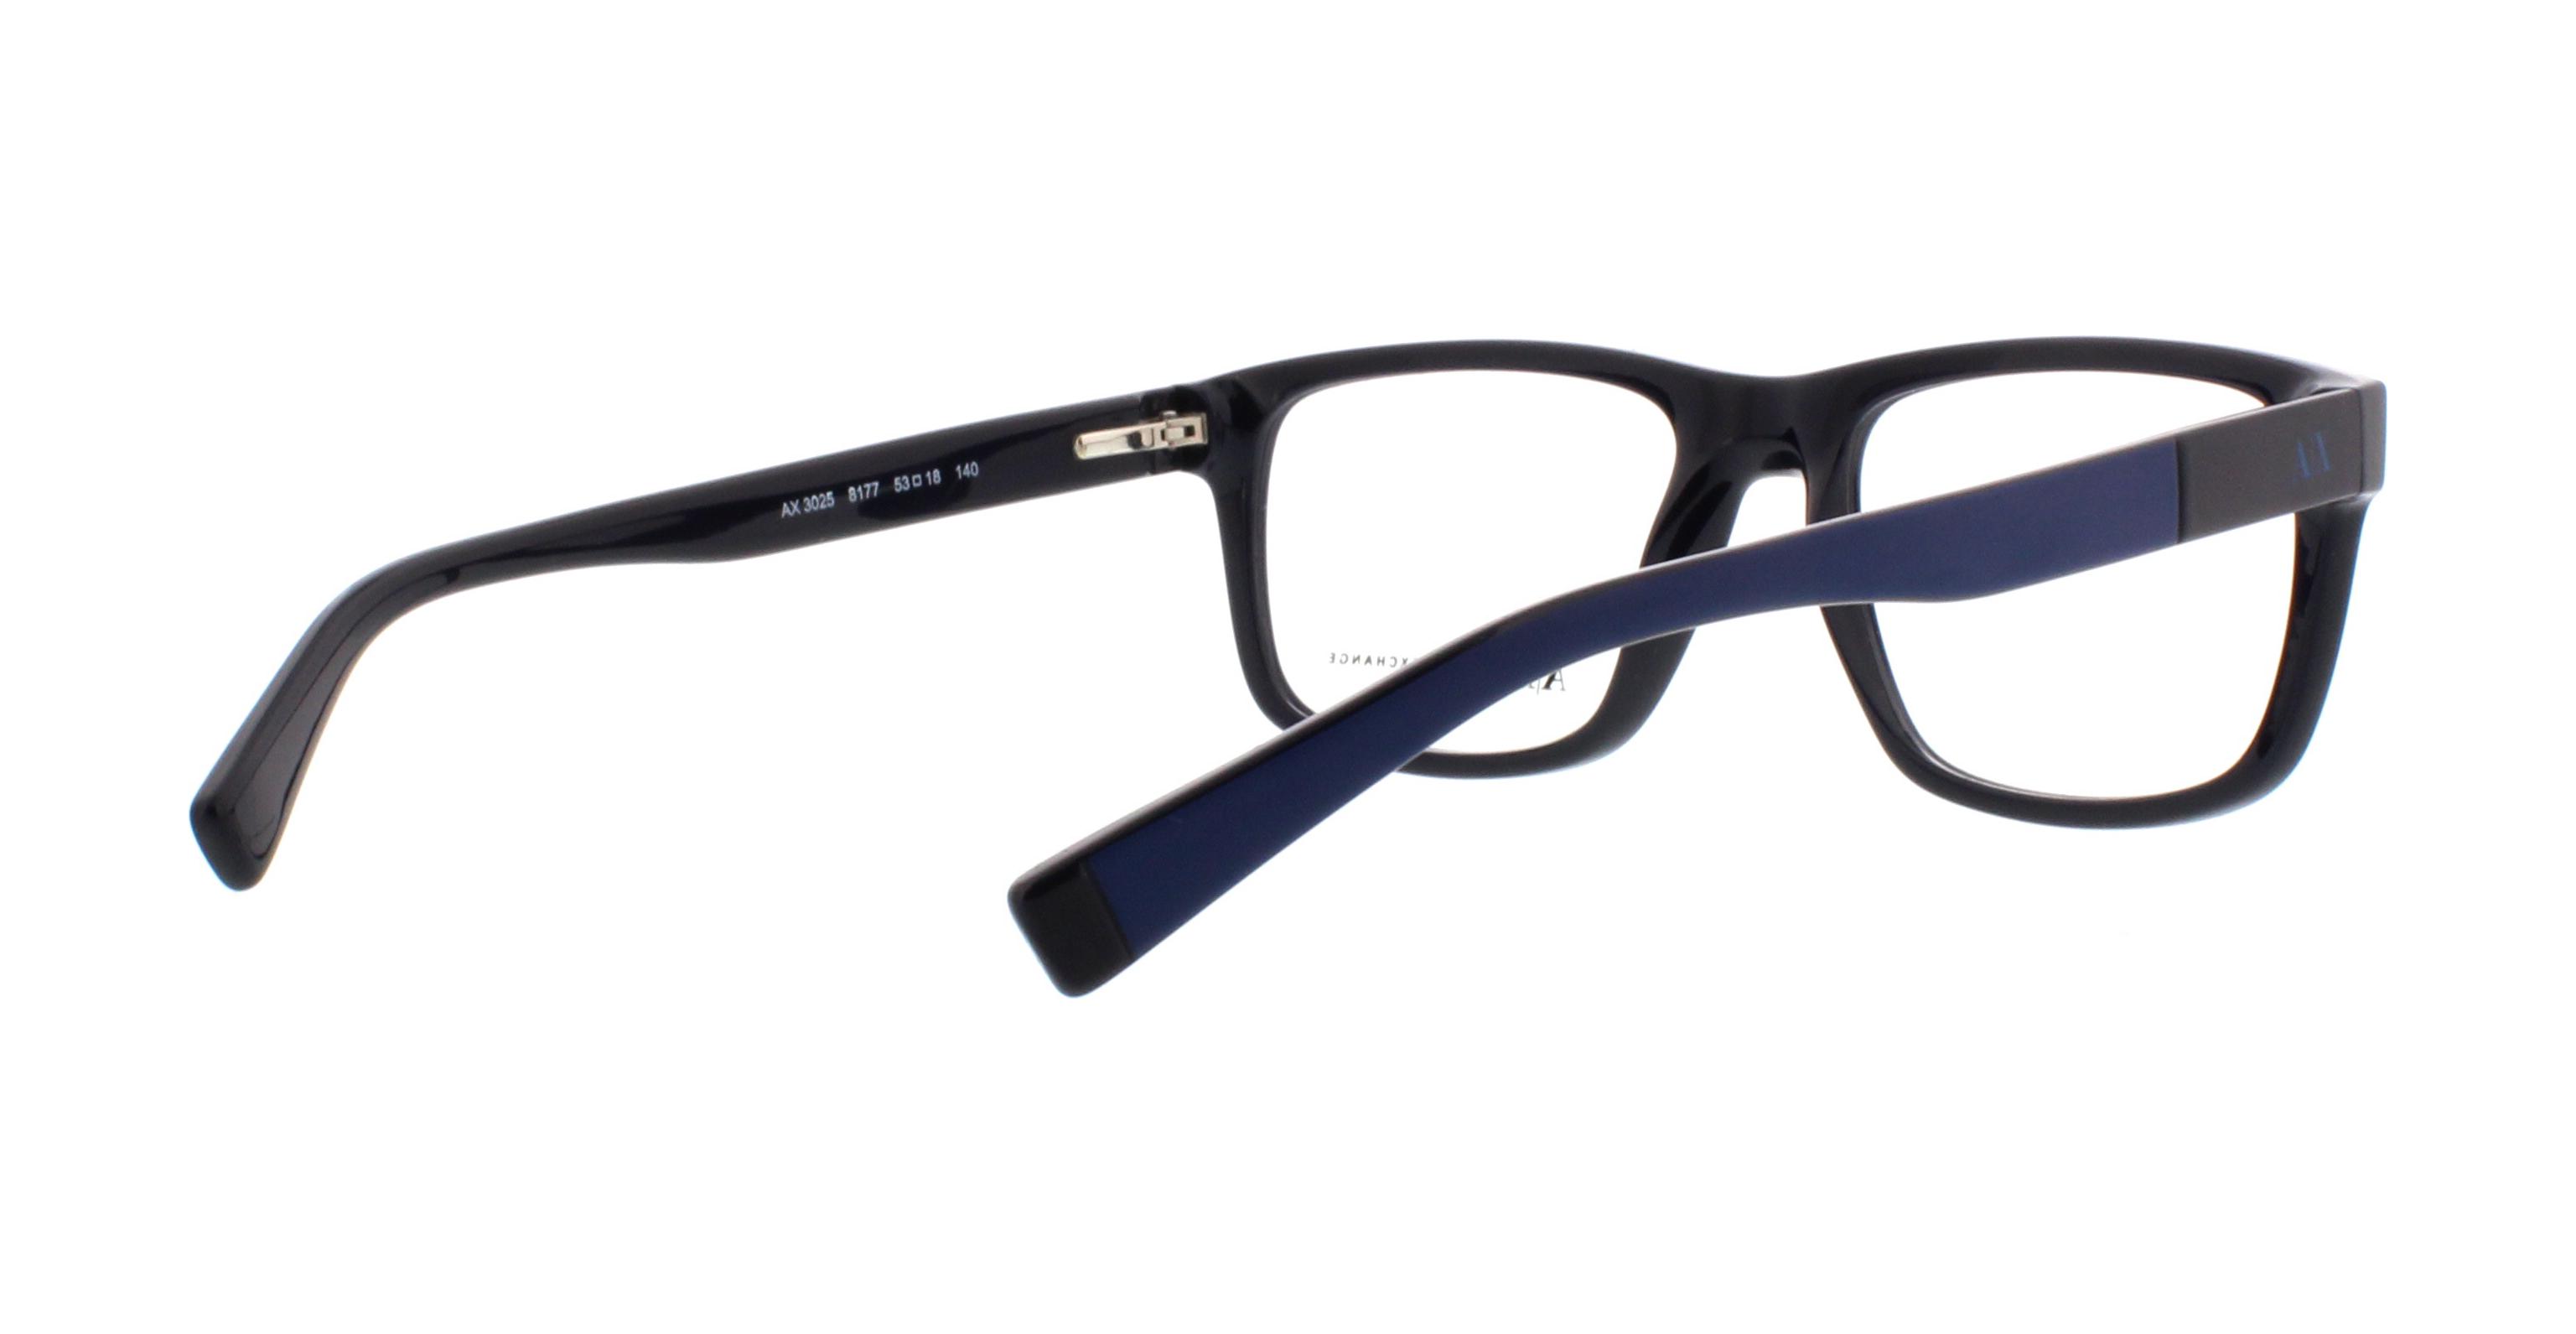 Designer Frames Outlet. AX3025 Exchange Eyeglasses Armani